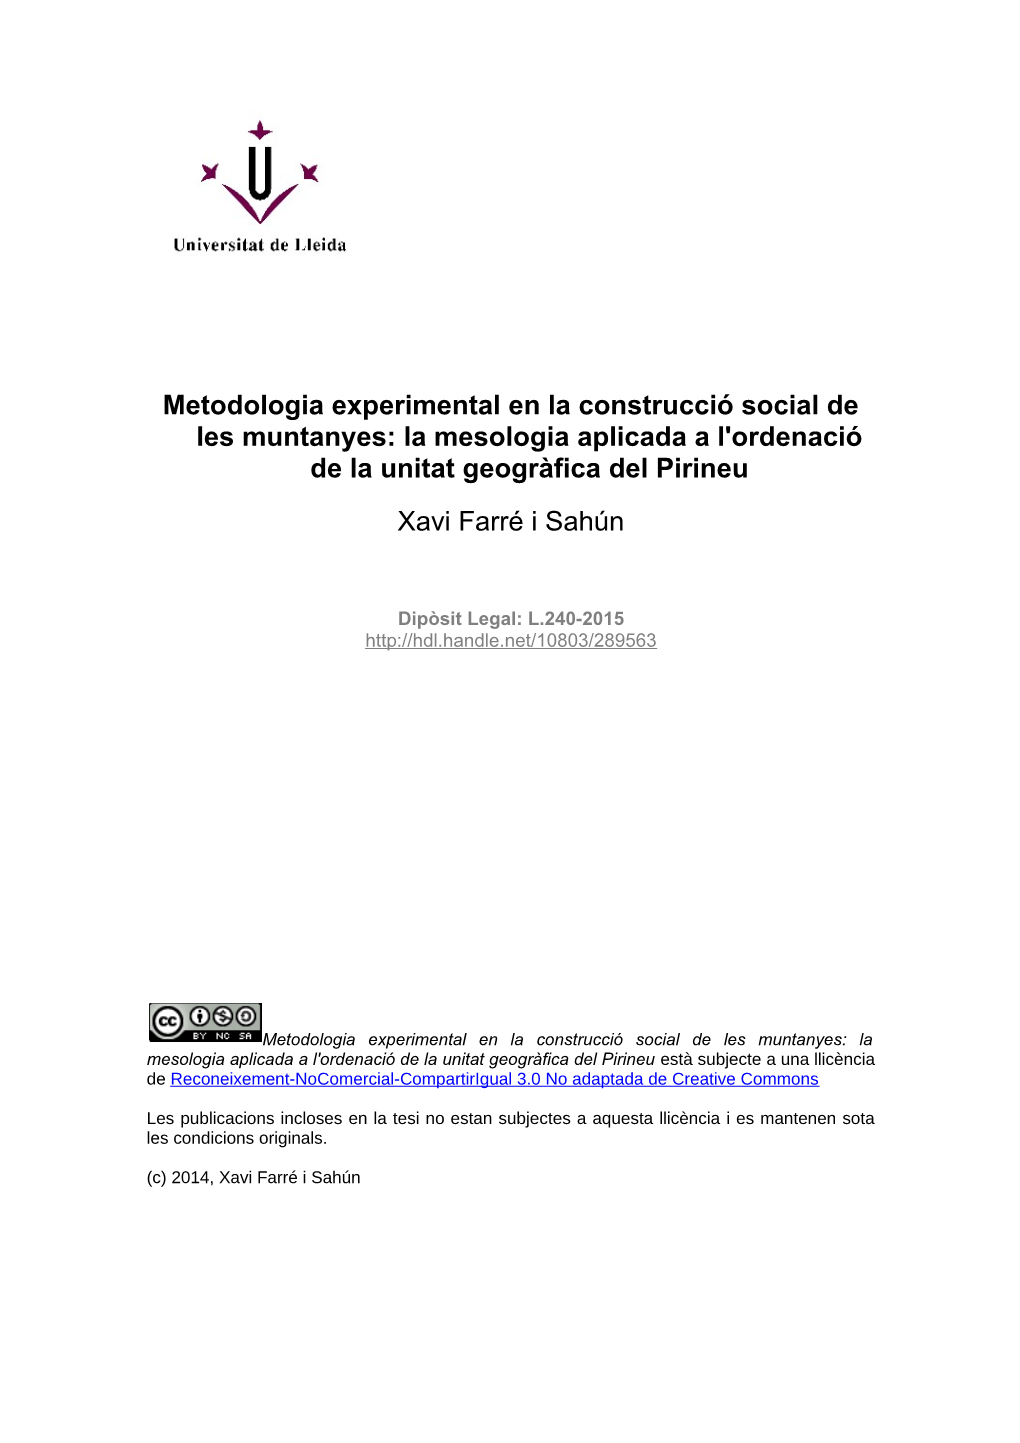 Metodologia Experimental En La Construcció Social De Les Muntanyes: La Mesologia Aplicada a L'ordenació De La Unitat Geogràfica Del Pirineu Xavi Farré I Sahún